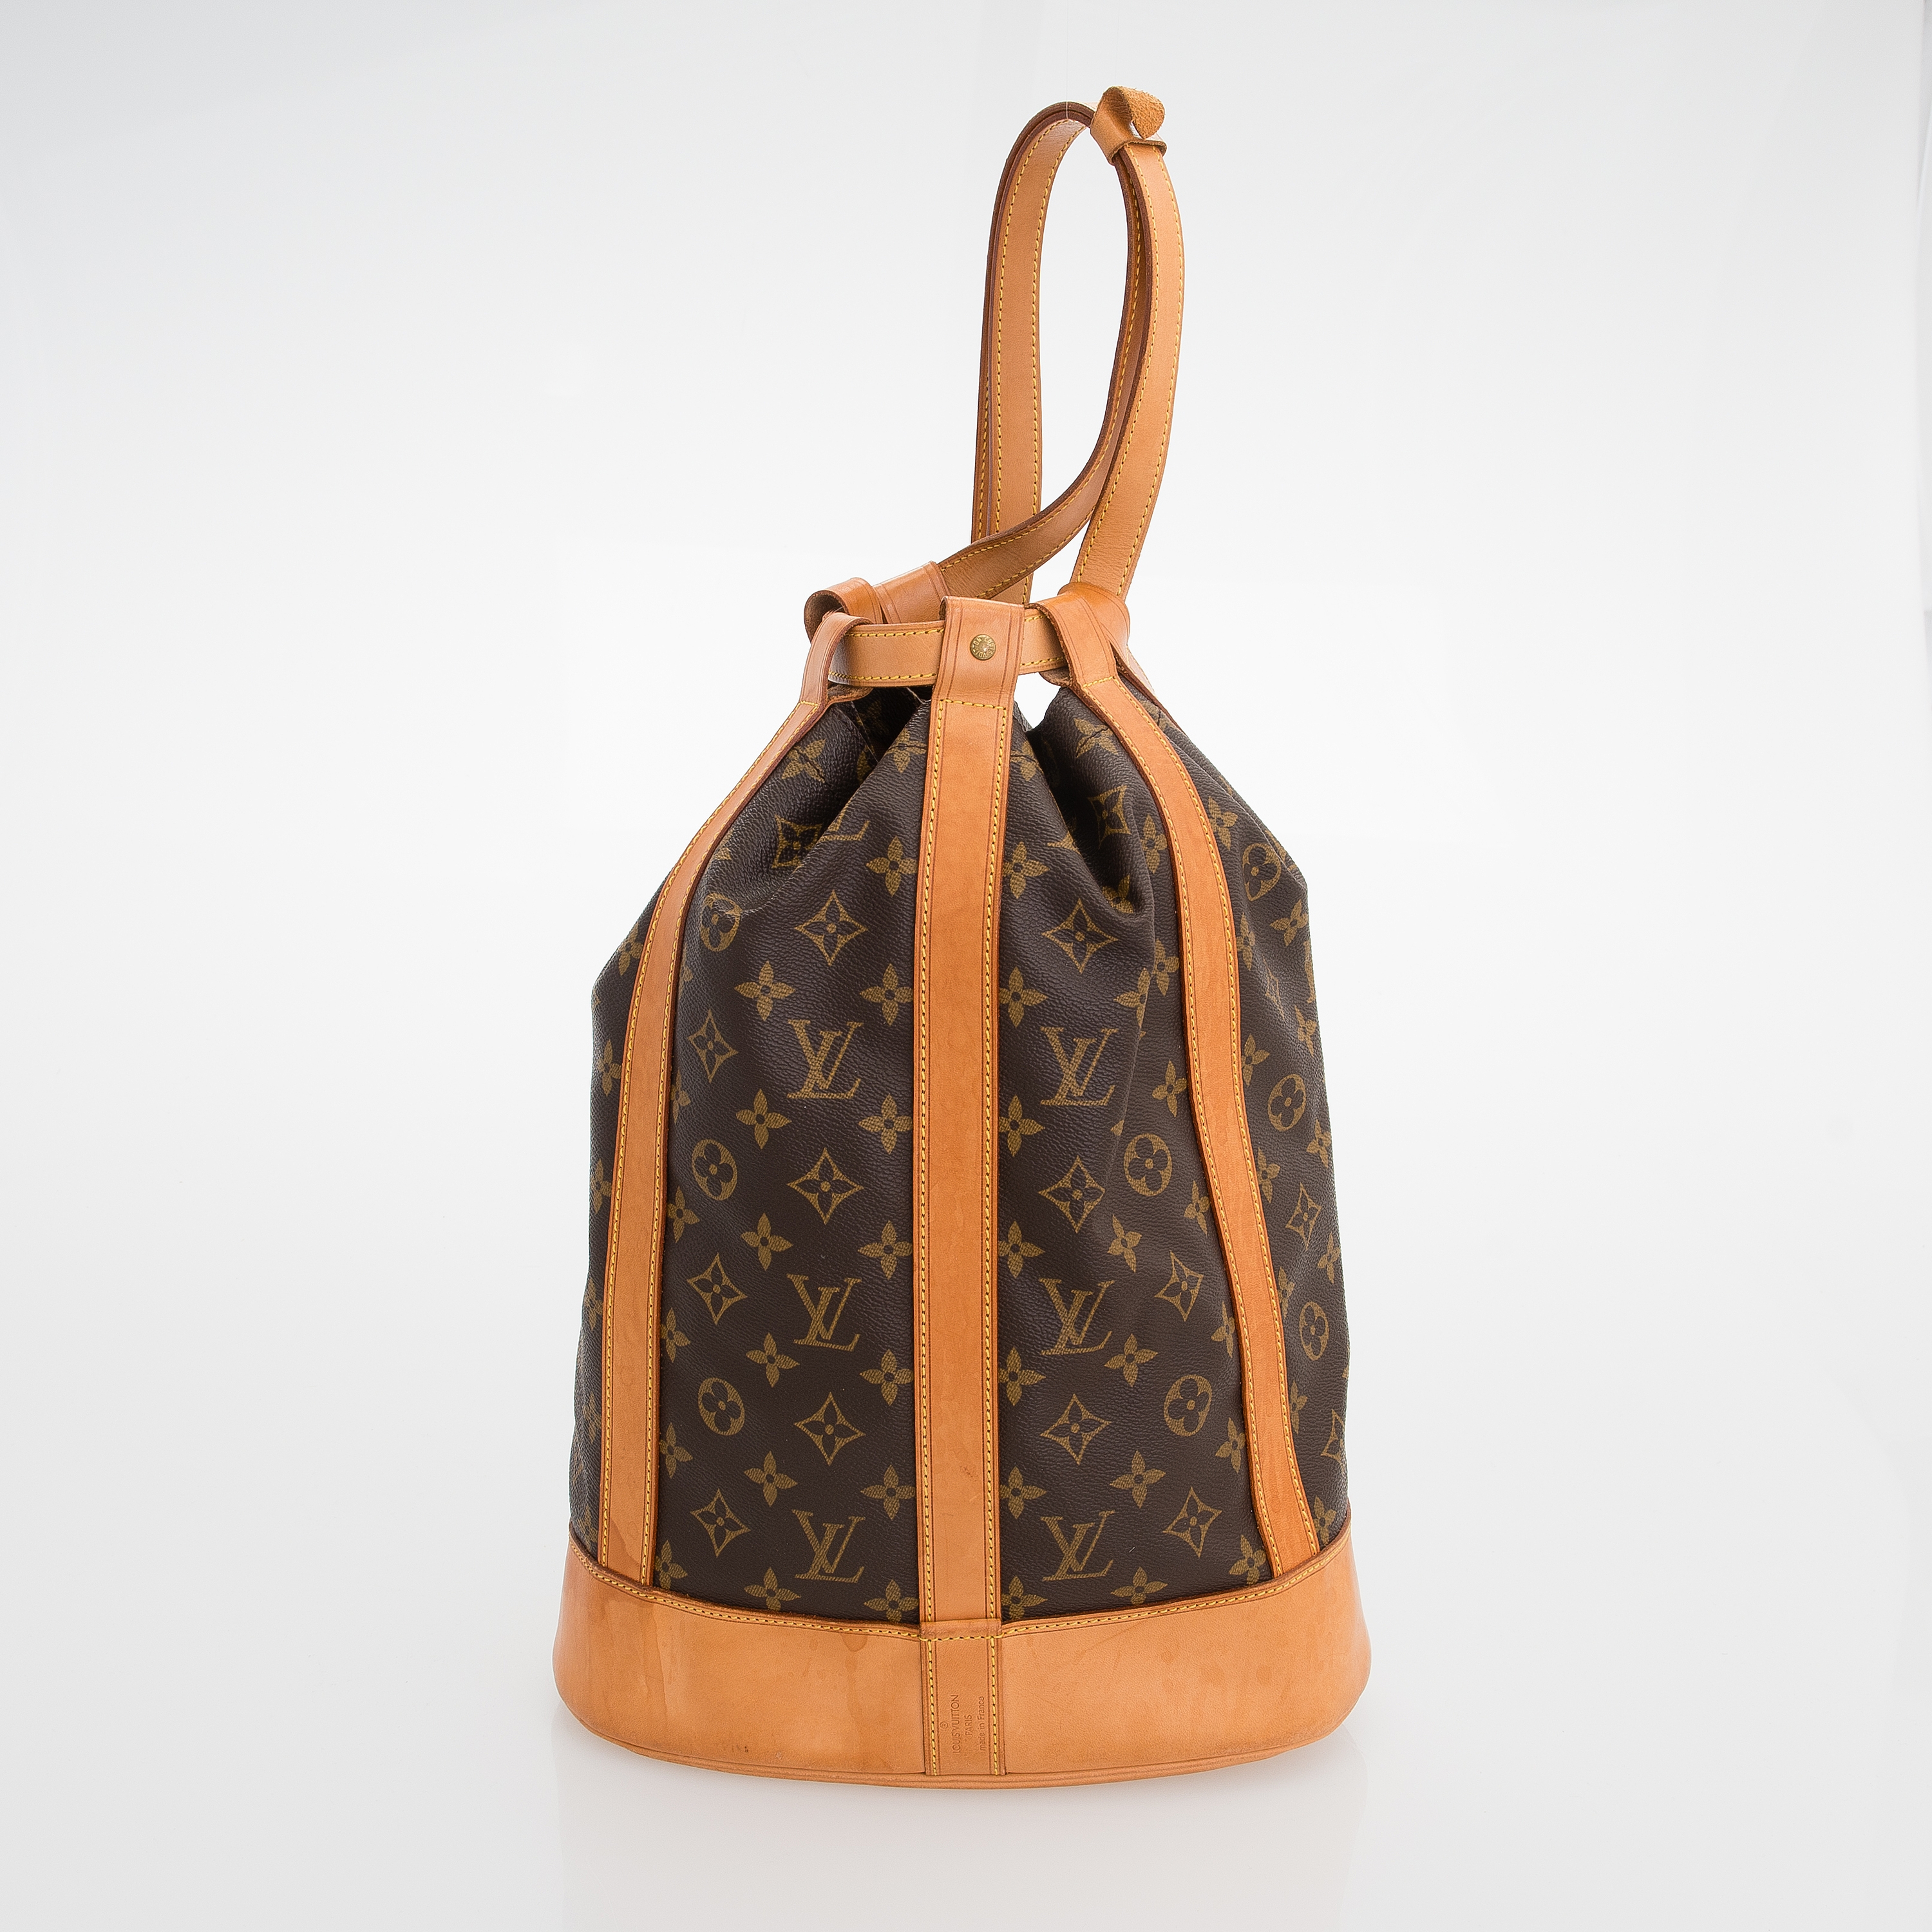 Louis Vuitton Conte de fees Mussette mini Lin shoulder bag – The